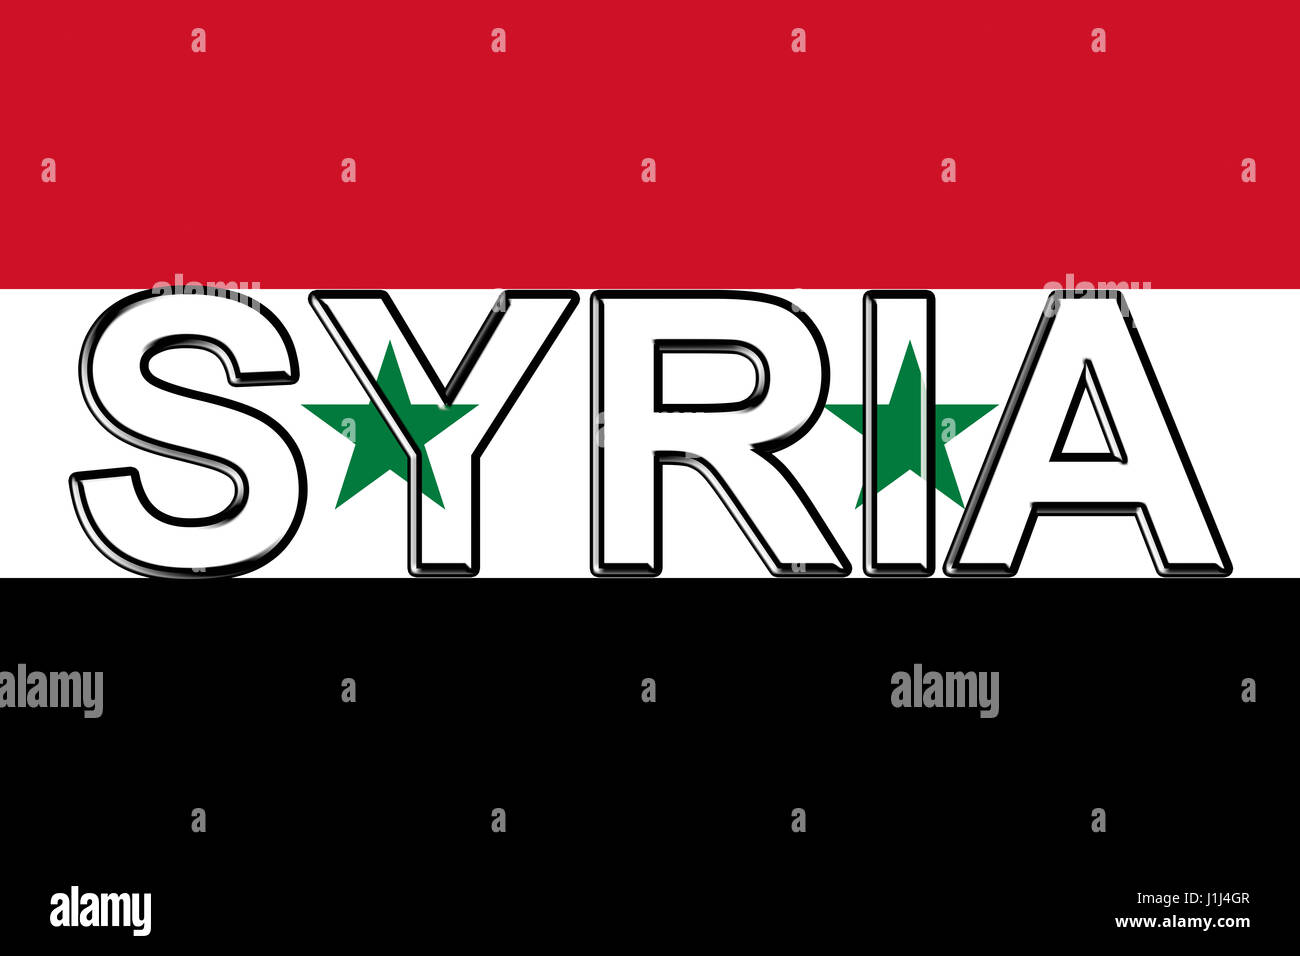 Abbildung der Flagge Syriens Stockfoto